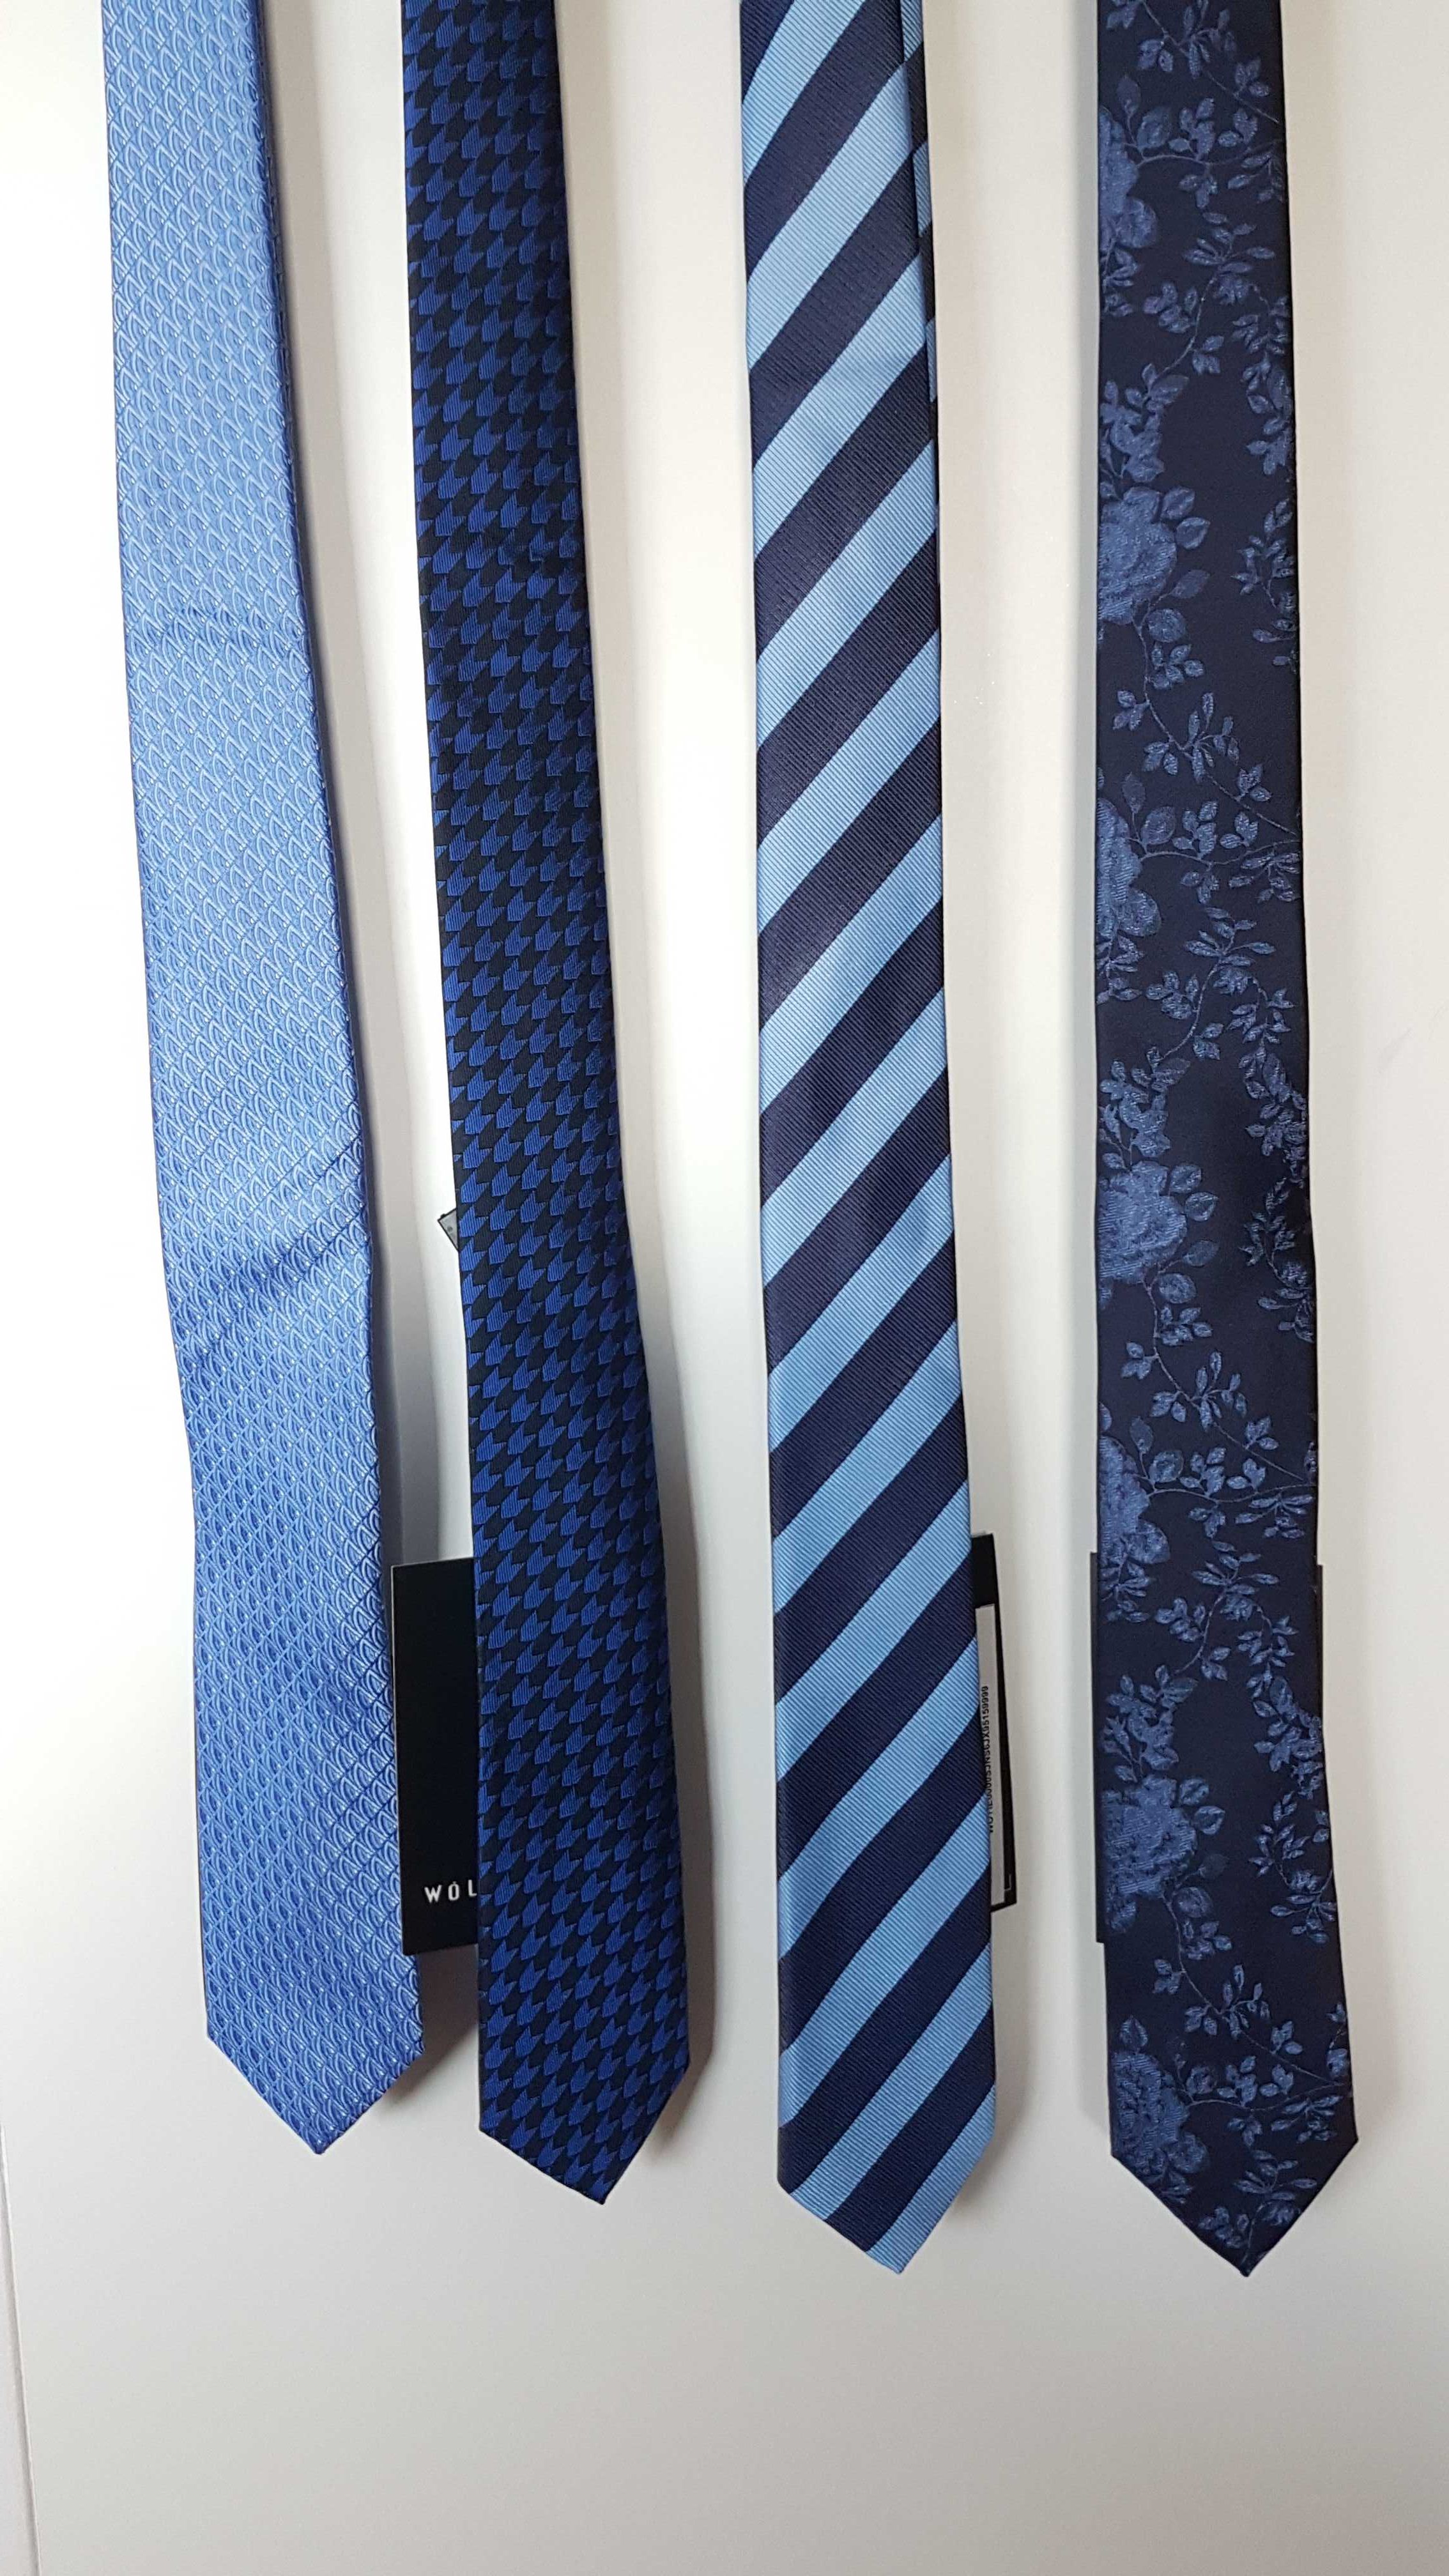 Krawat niebieski/granatowy 100% jedwab Wólczanka różne wzory